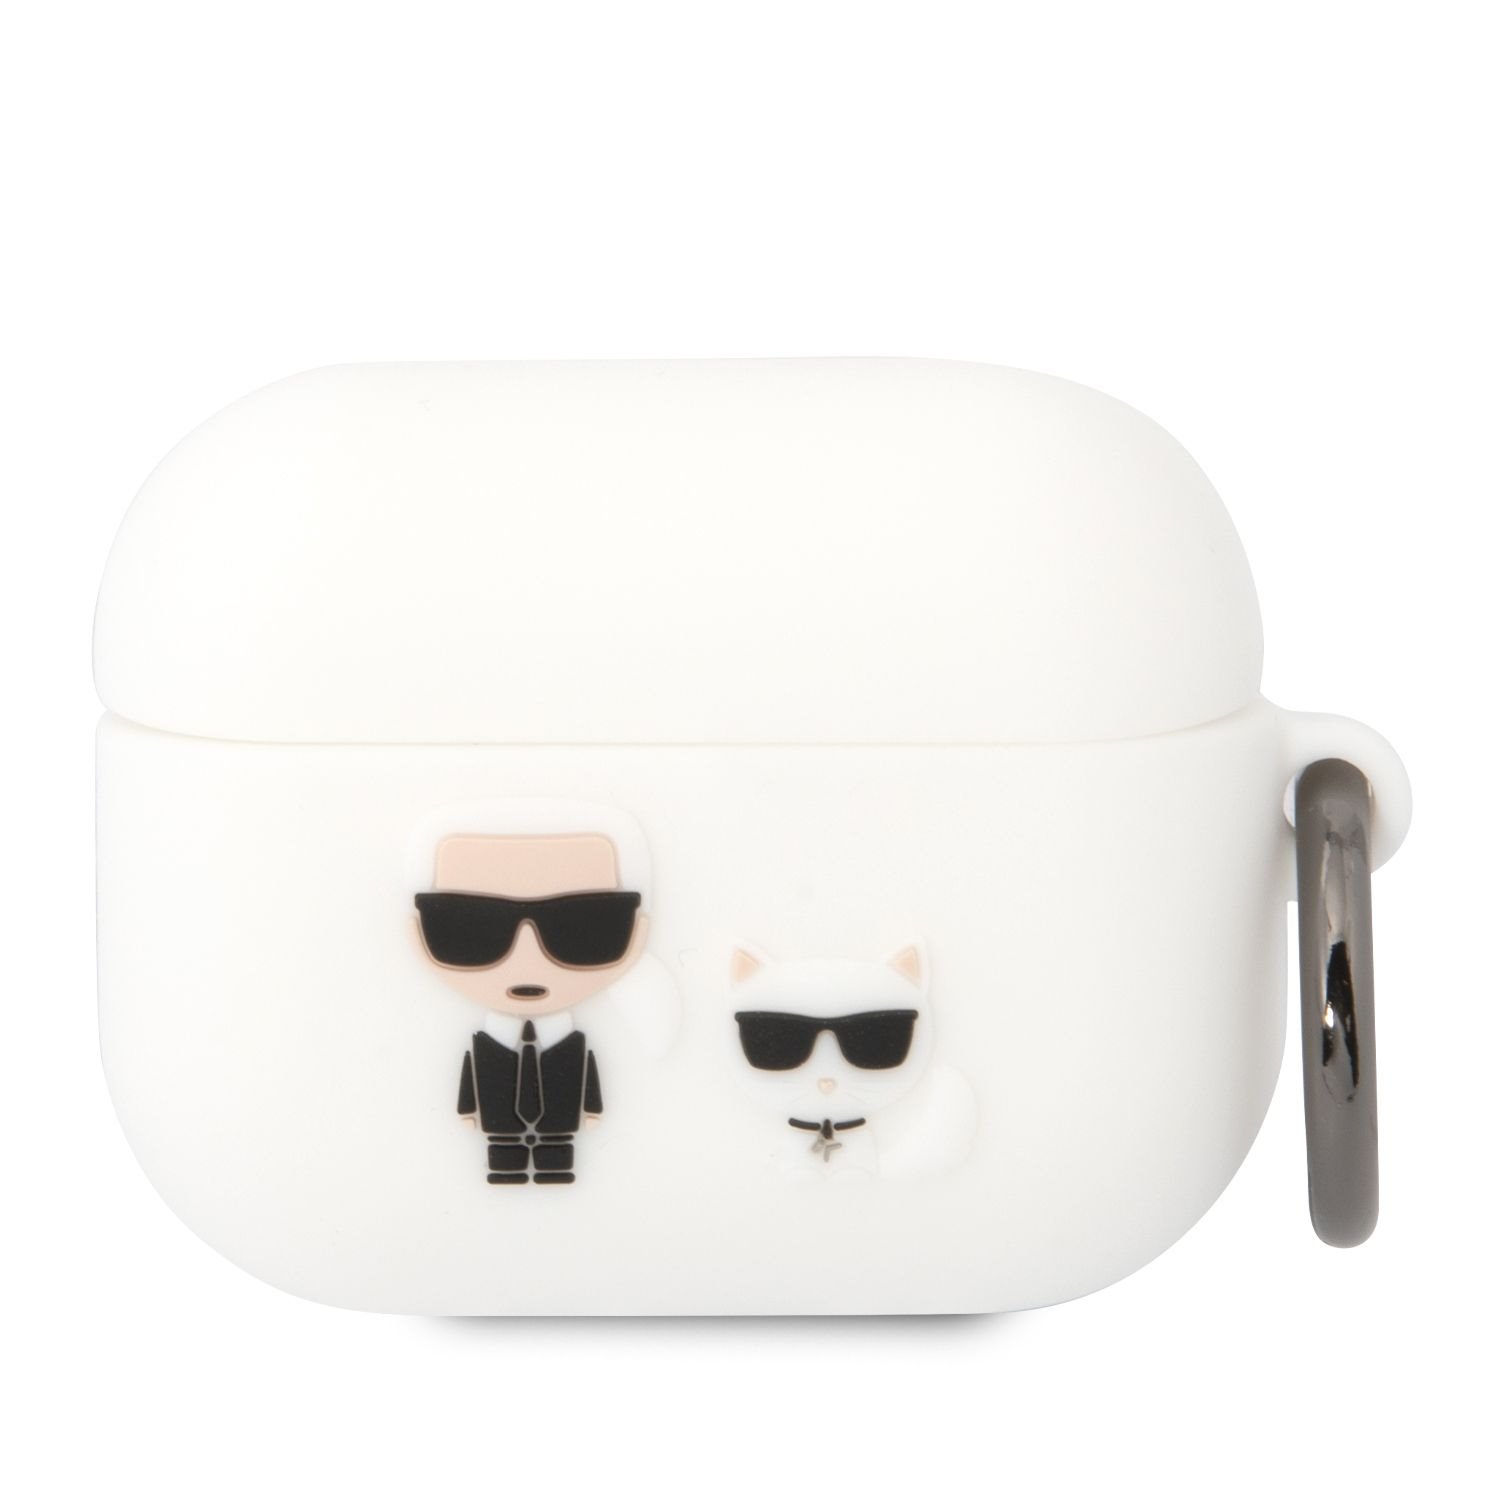 Silikonové pouzdro Karl Lagerfeld and Choupette pro Airpods Pro, bílá